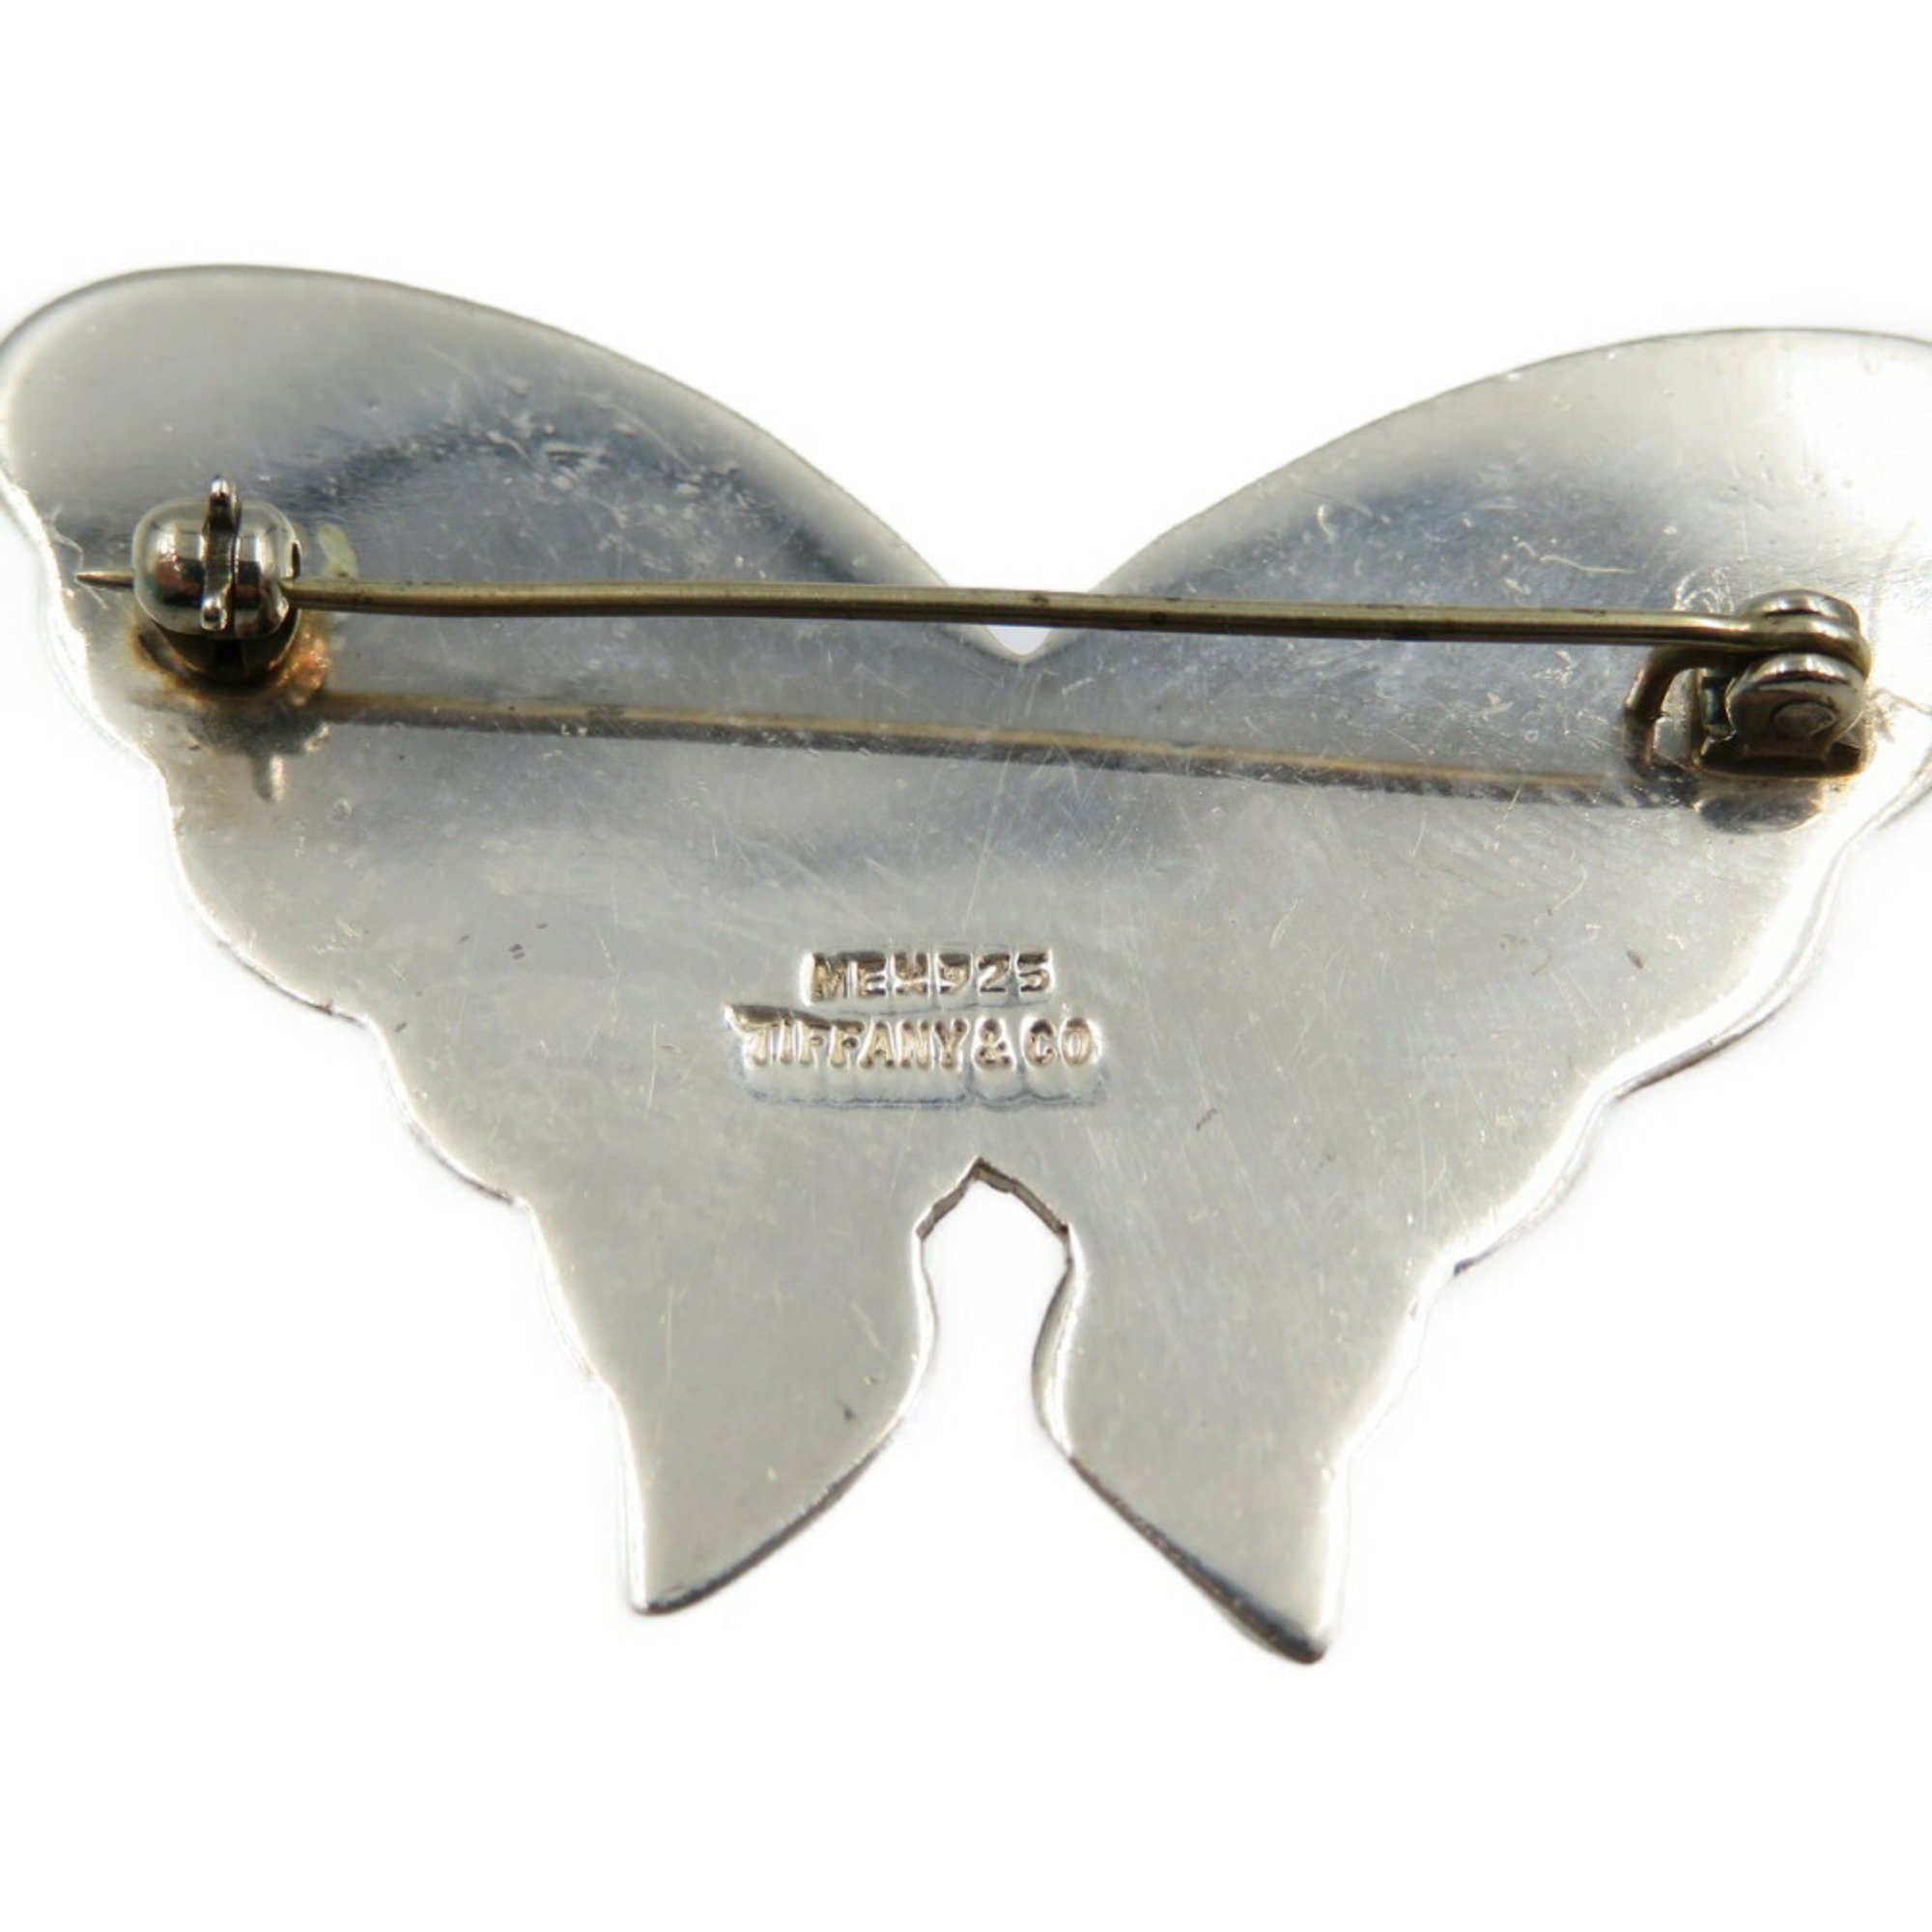 Tiffany silver 925 butterfly brooch